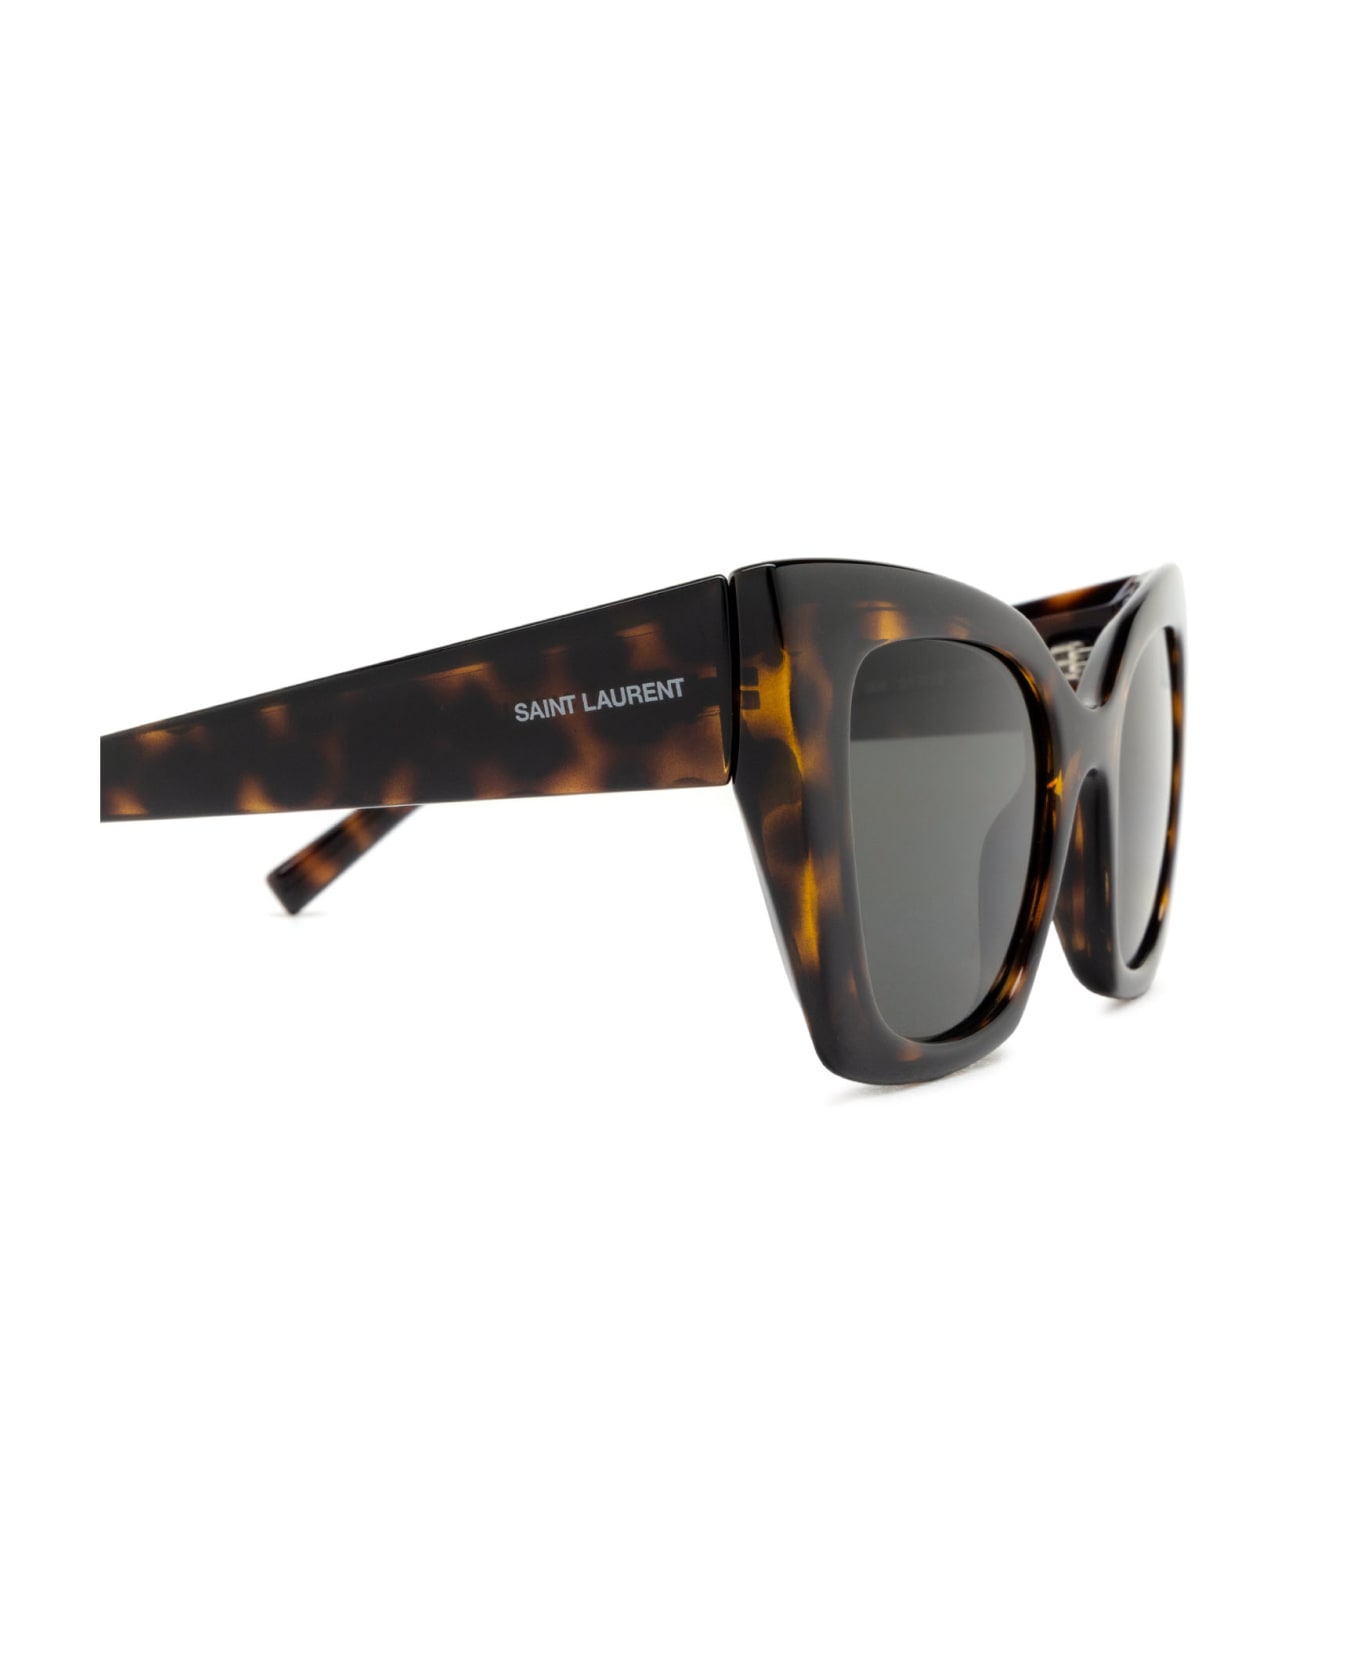 Saint Laurent Eyewear Sl 552 Havana Sunglasses - Havana